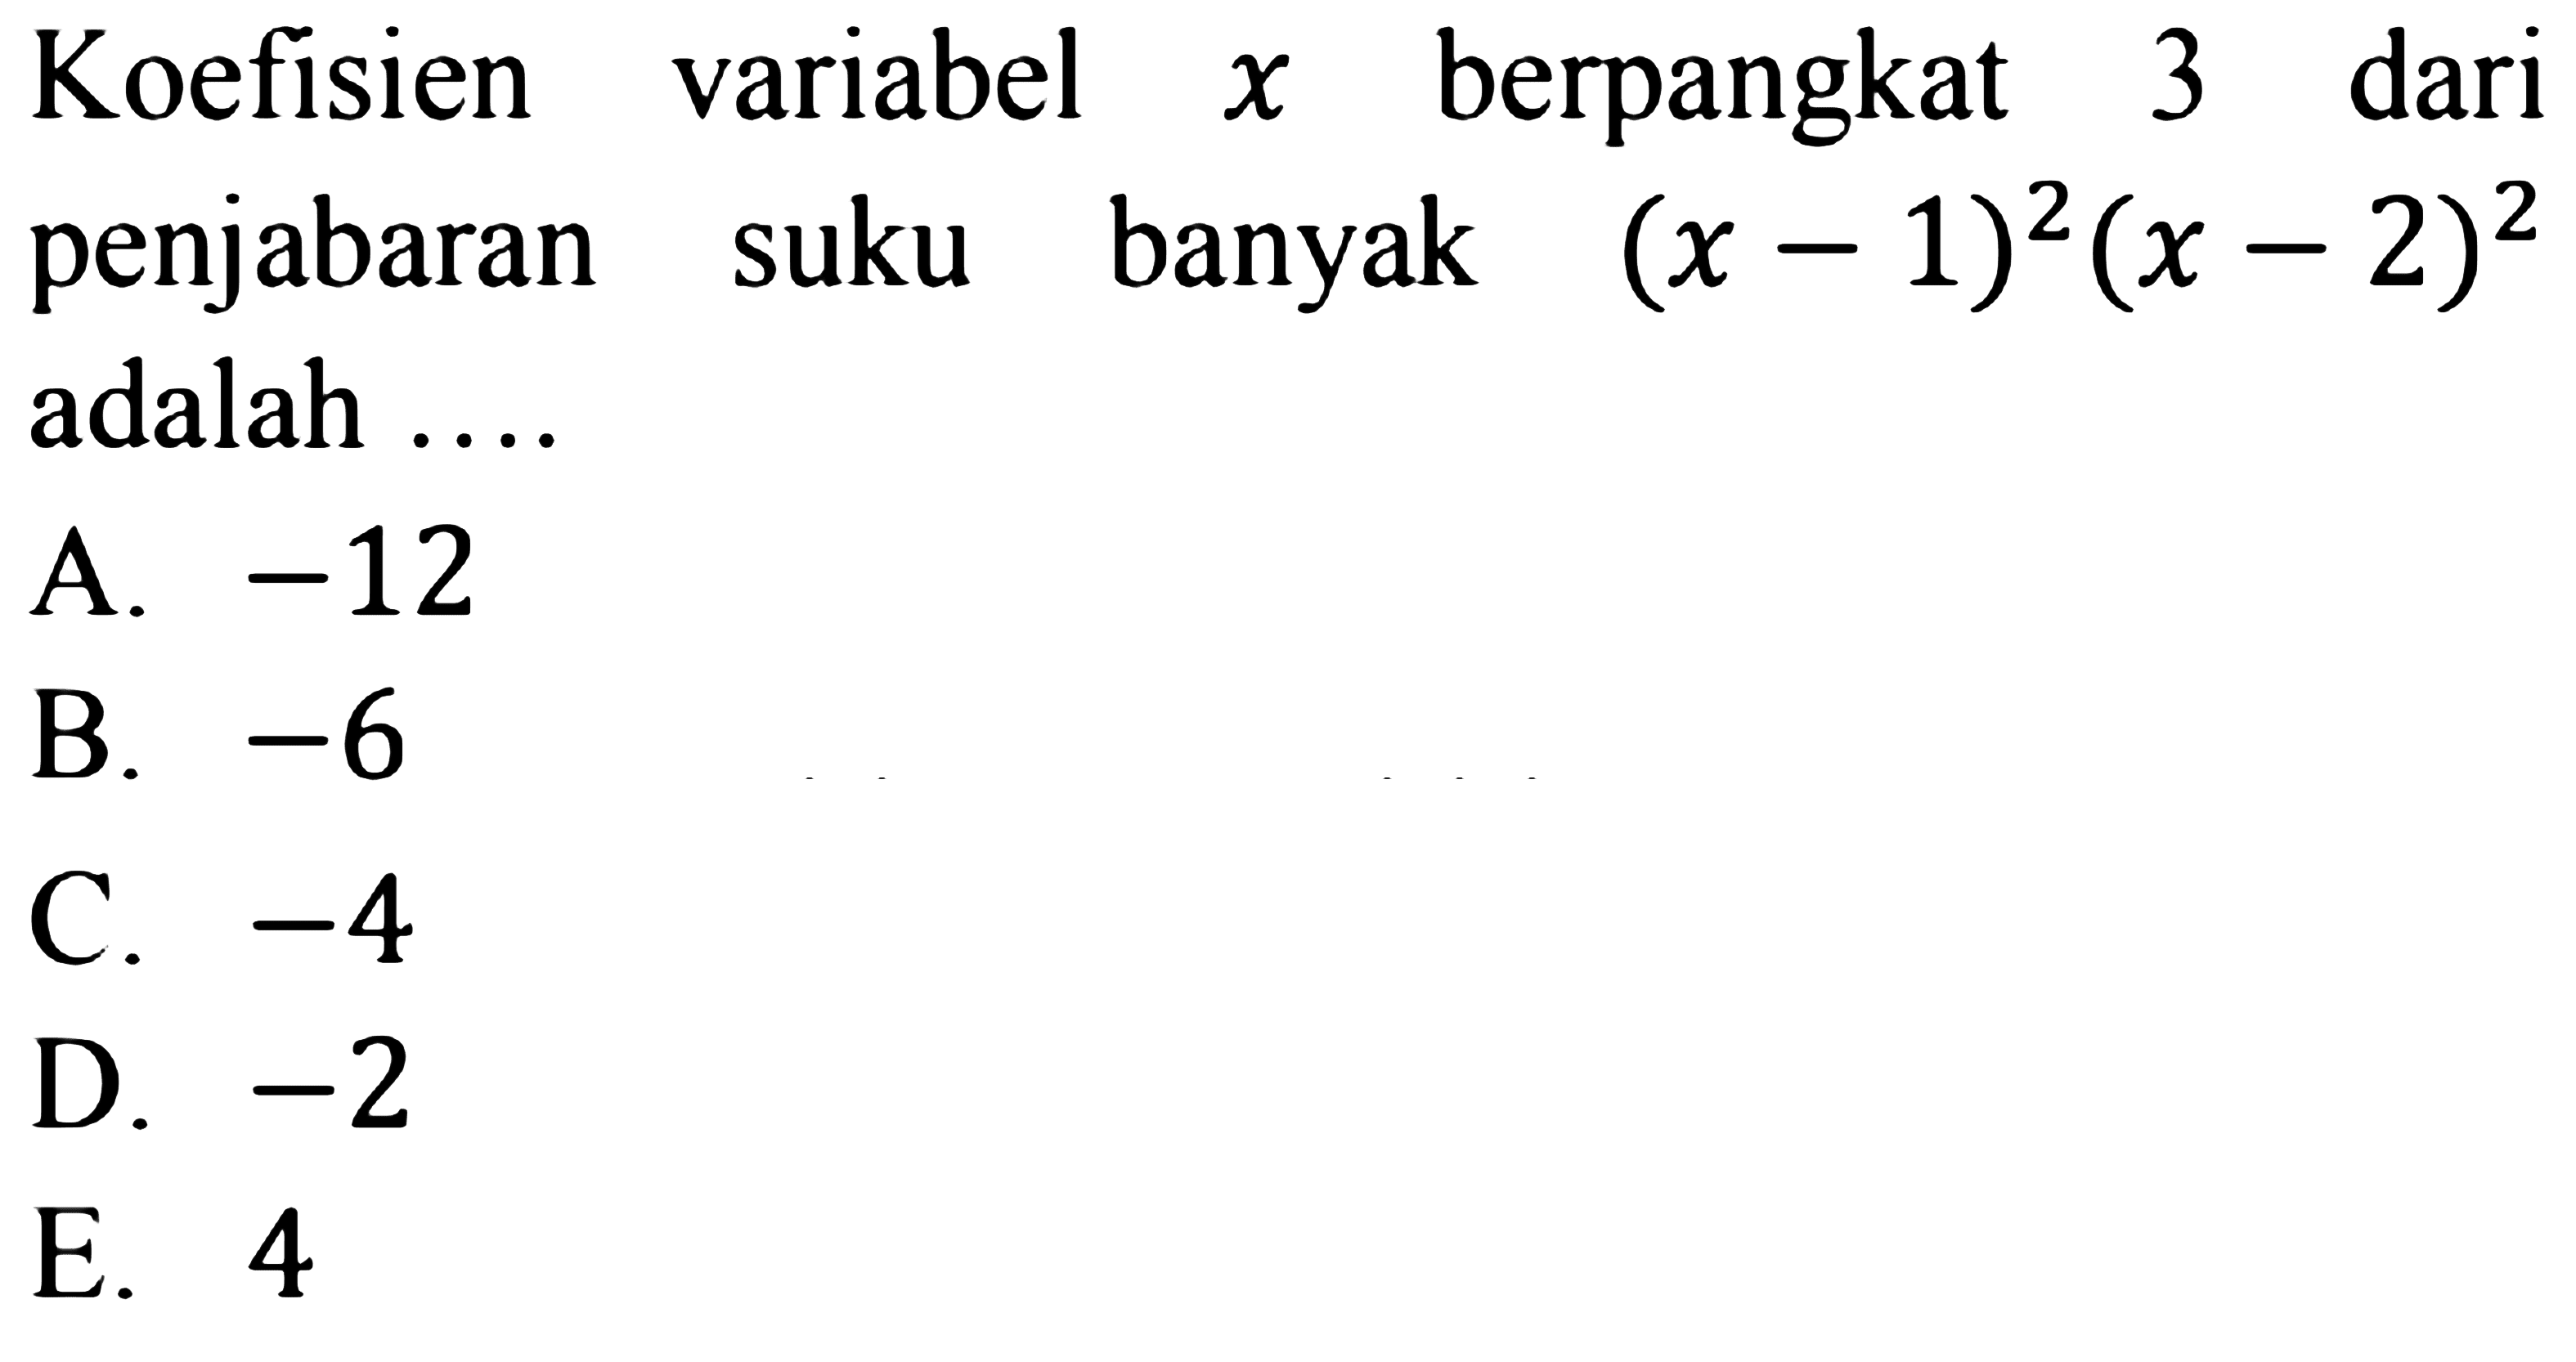 Koefisien variabel x berpangkat 3 dari penjabaran suku banyak (x-1^)2(x-2)^2 adalah ...